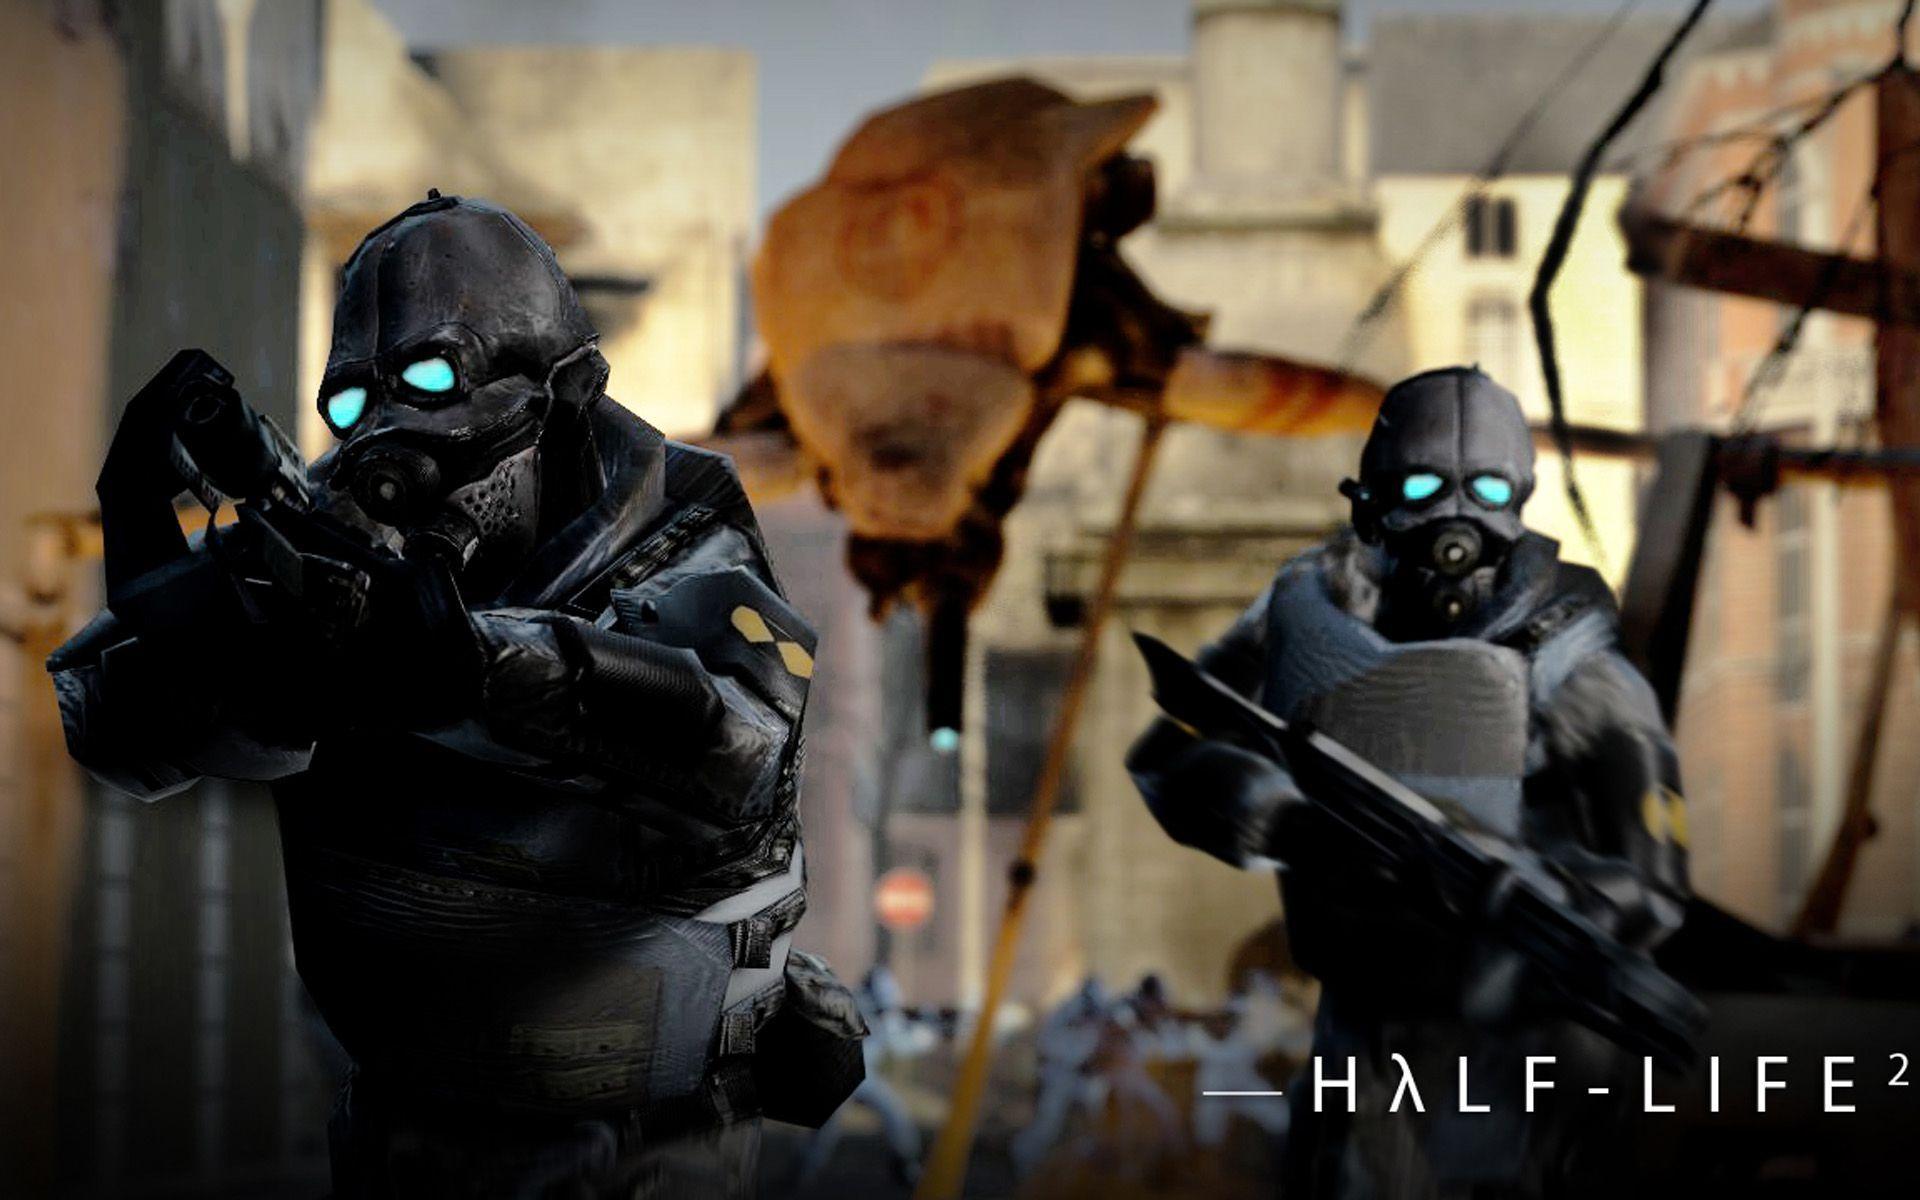 Download Half Life 2 Combine Wallpaper Gallery. Best Games